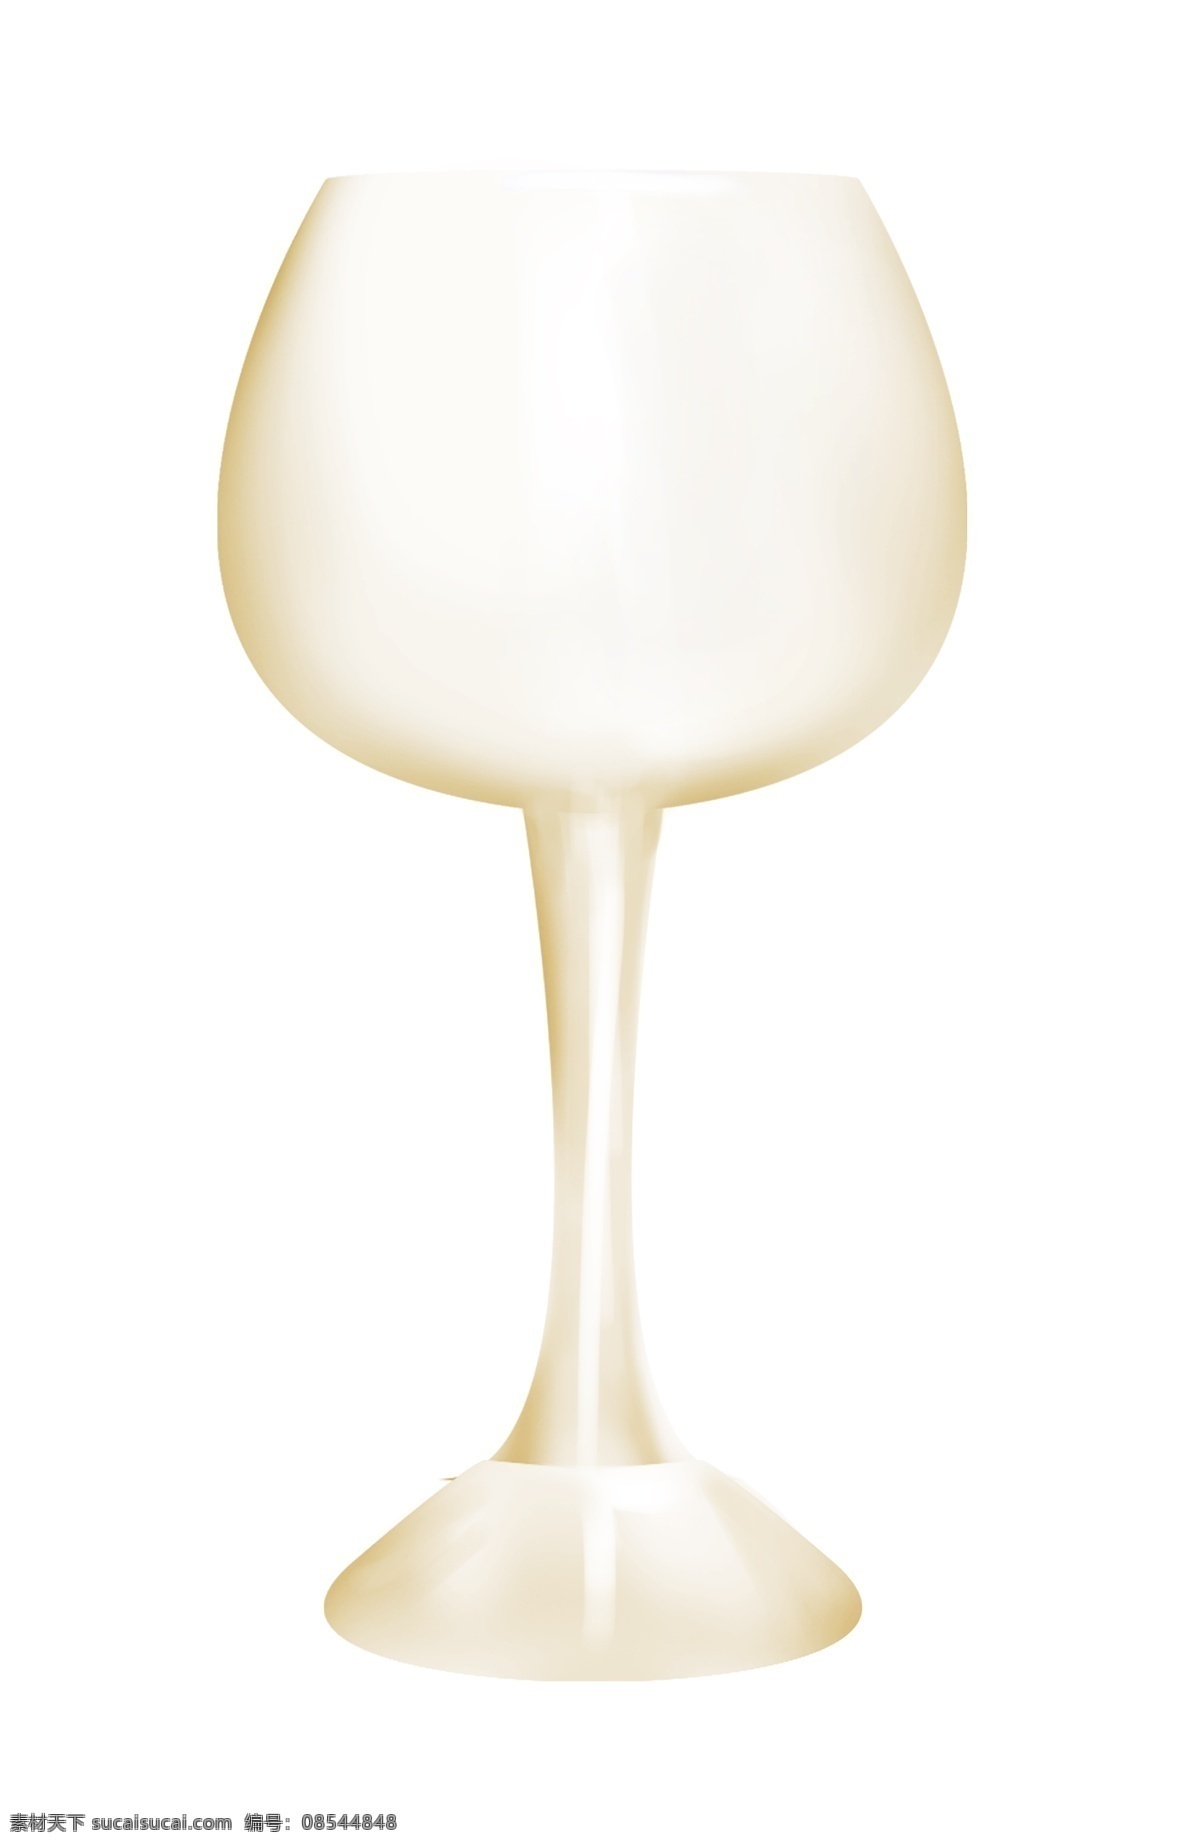 透明 玻璃 酒杯 插画 玻璃酒杯 透明的杯子 喝酒 玻璃容器 玻璃器皿 玻璃酒杯插画 玻璃杯子